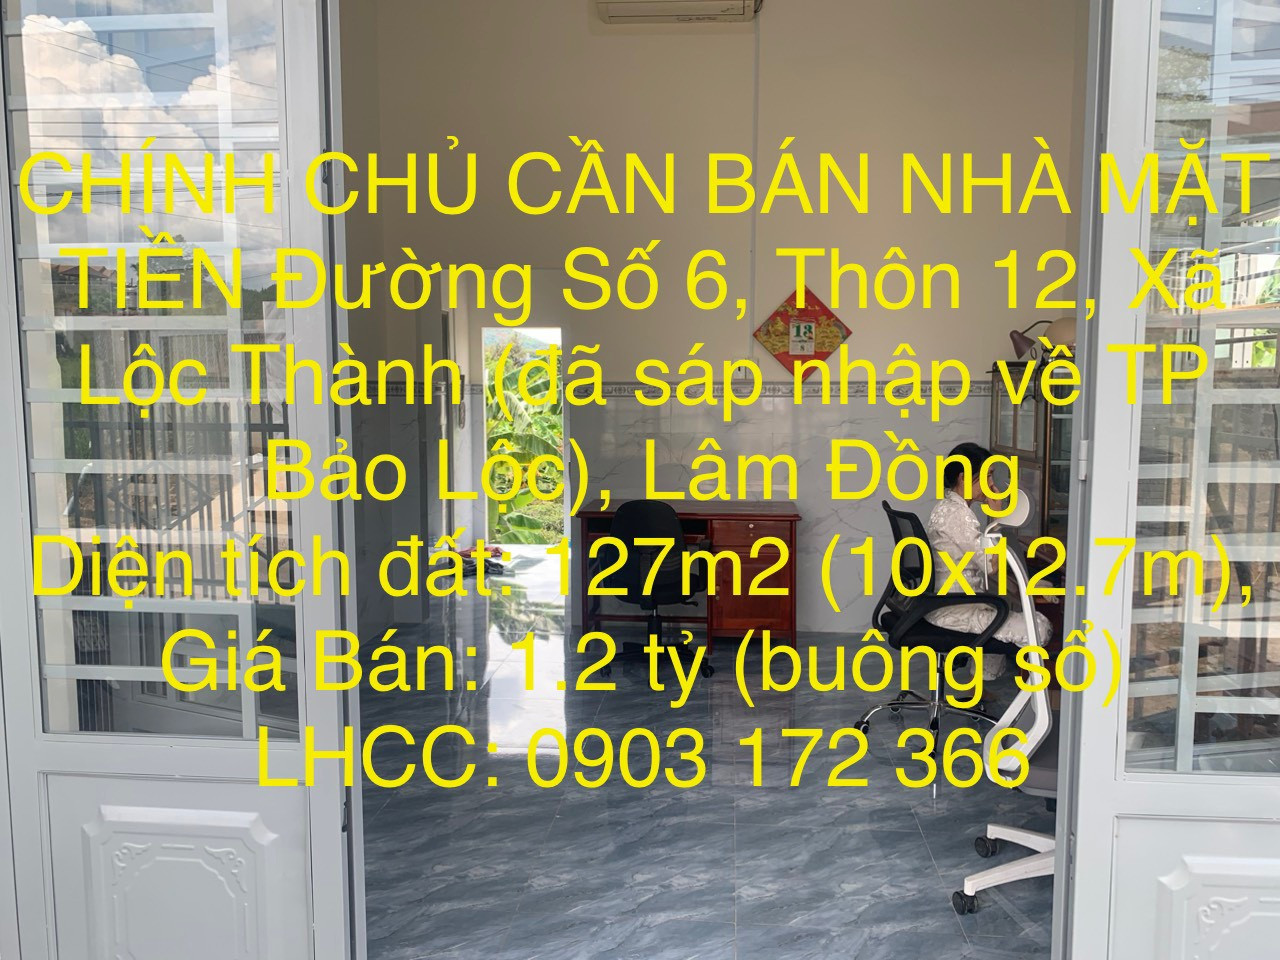 CẦN BÁN NHÀ CHÍNH CHỦ MẶT TIỀN Đường Số 6, Thôn 12, Xã Lộc Thành (đã sáp nhập về TP Bảo Lộc), Lâm Đồng